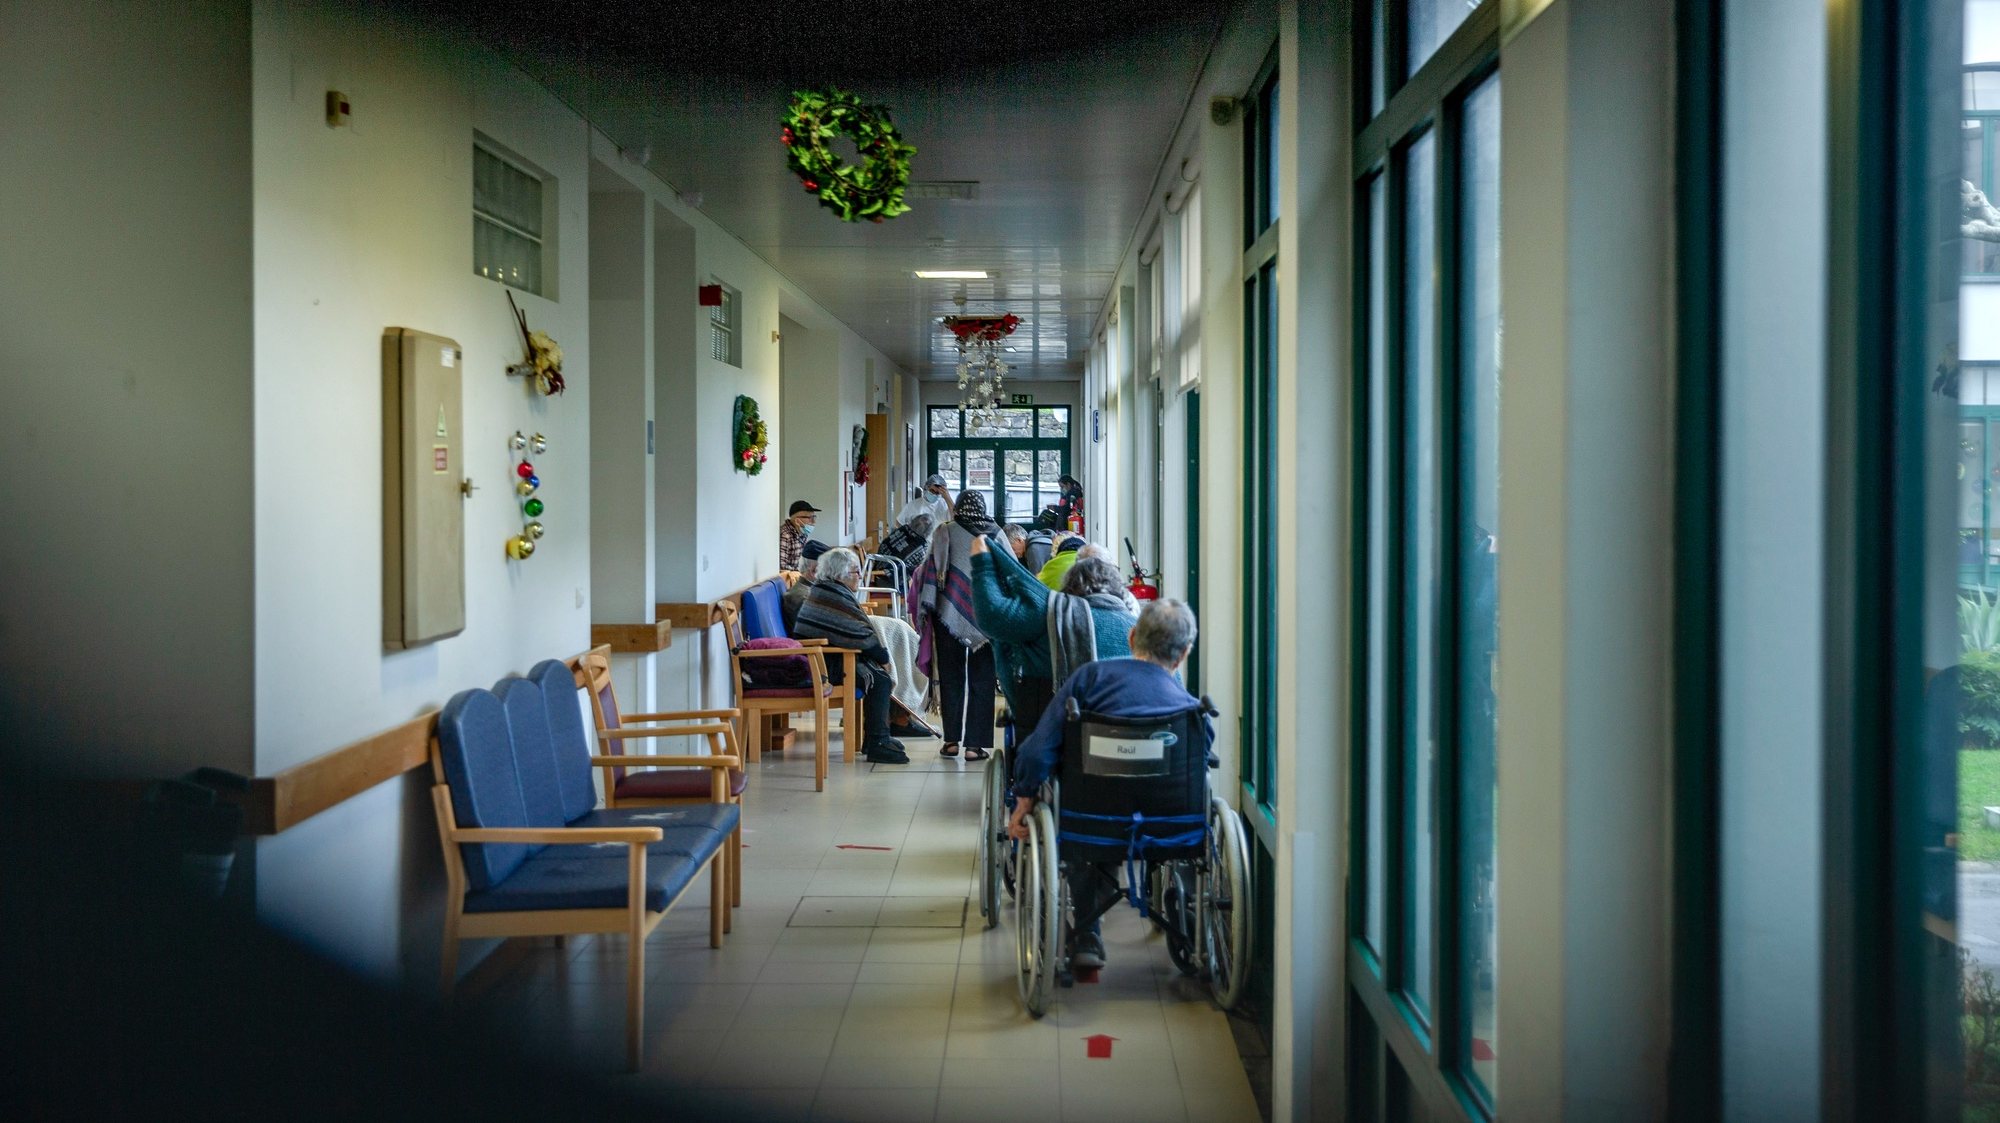 Da janela do quarto, Celeste Soares, de 85 anos, foi assistindo à partida dos utentes do lar que, conforme eram diagnosticados, iam sendo levados